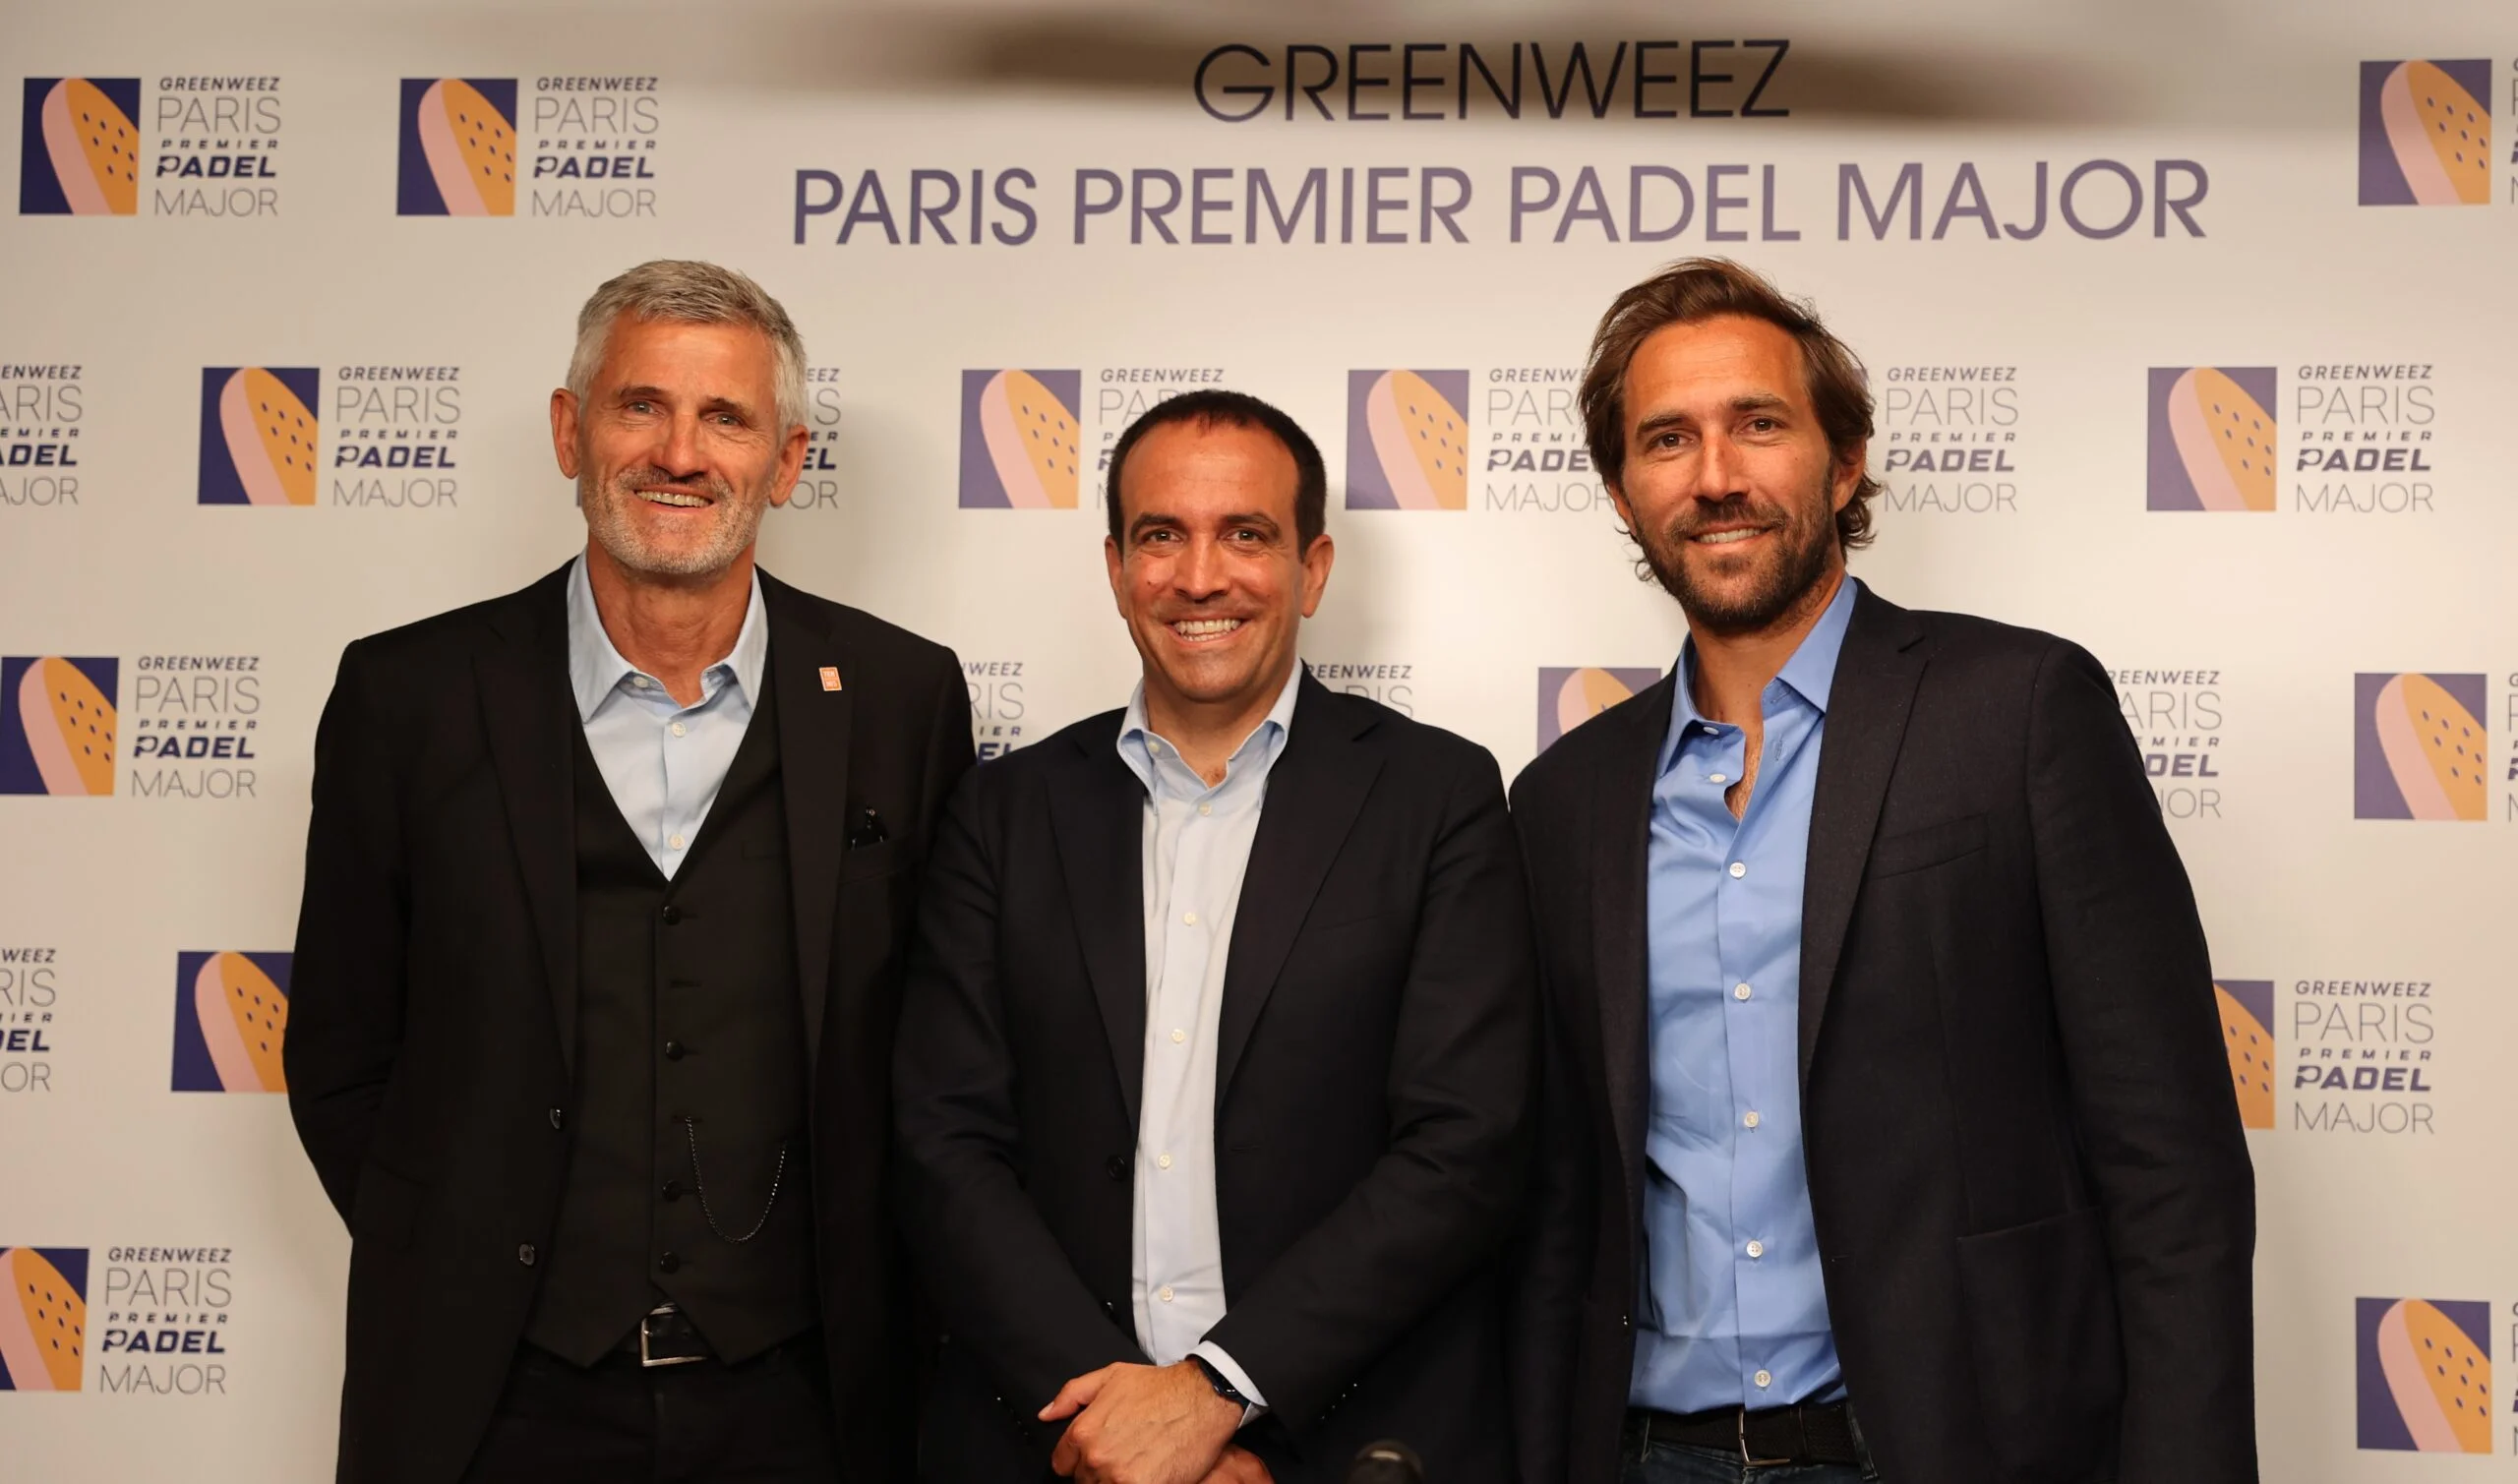 Le stade Roland-Garros prêt à accueillir le Greenweez Paris Premier Padel Major